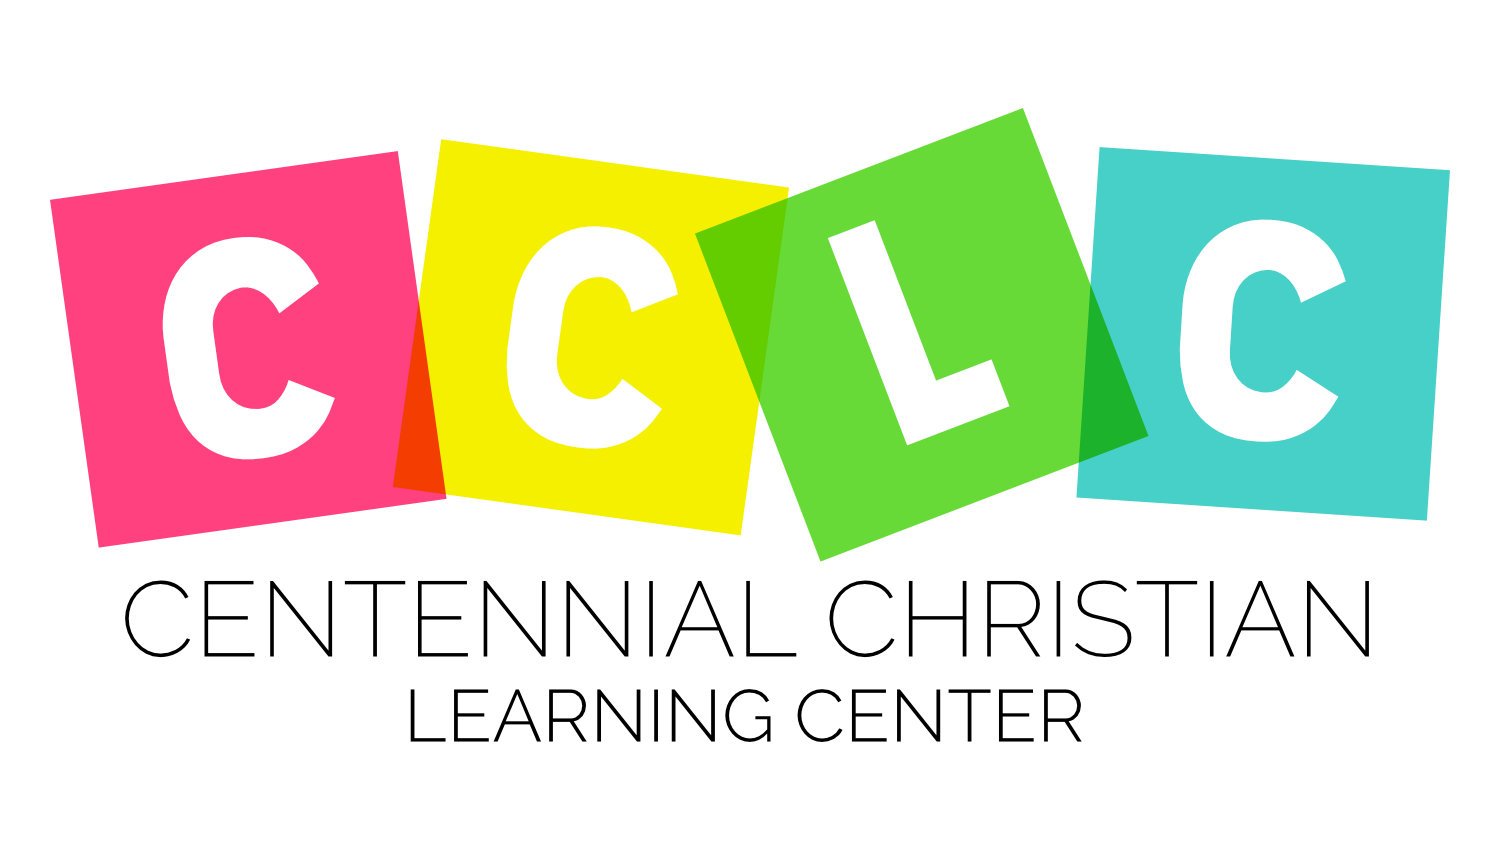 Centennial Christian Learning Center